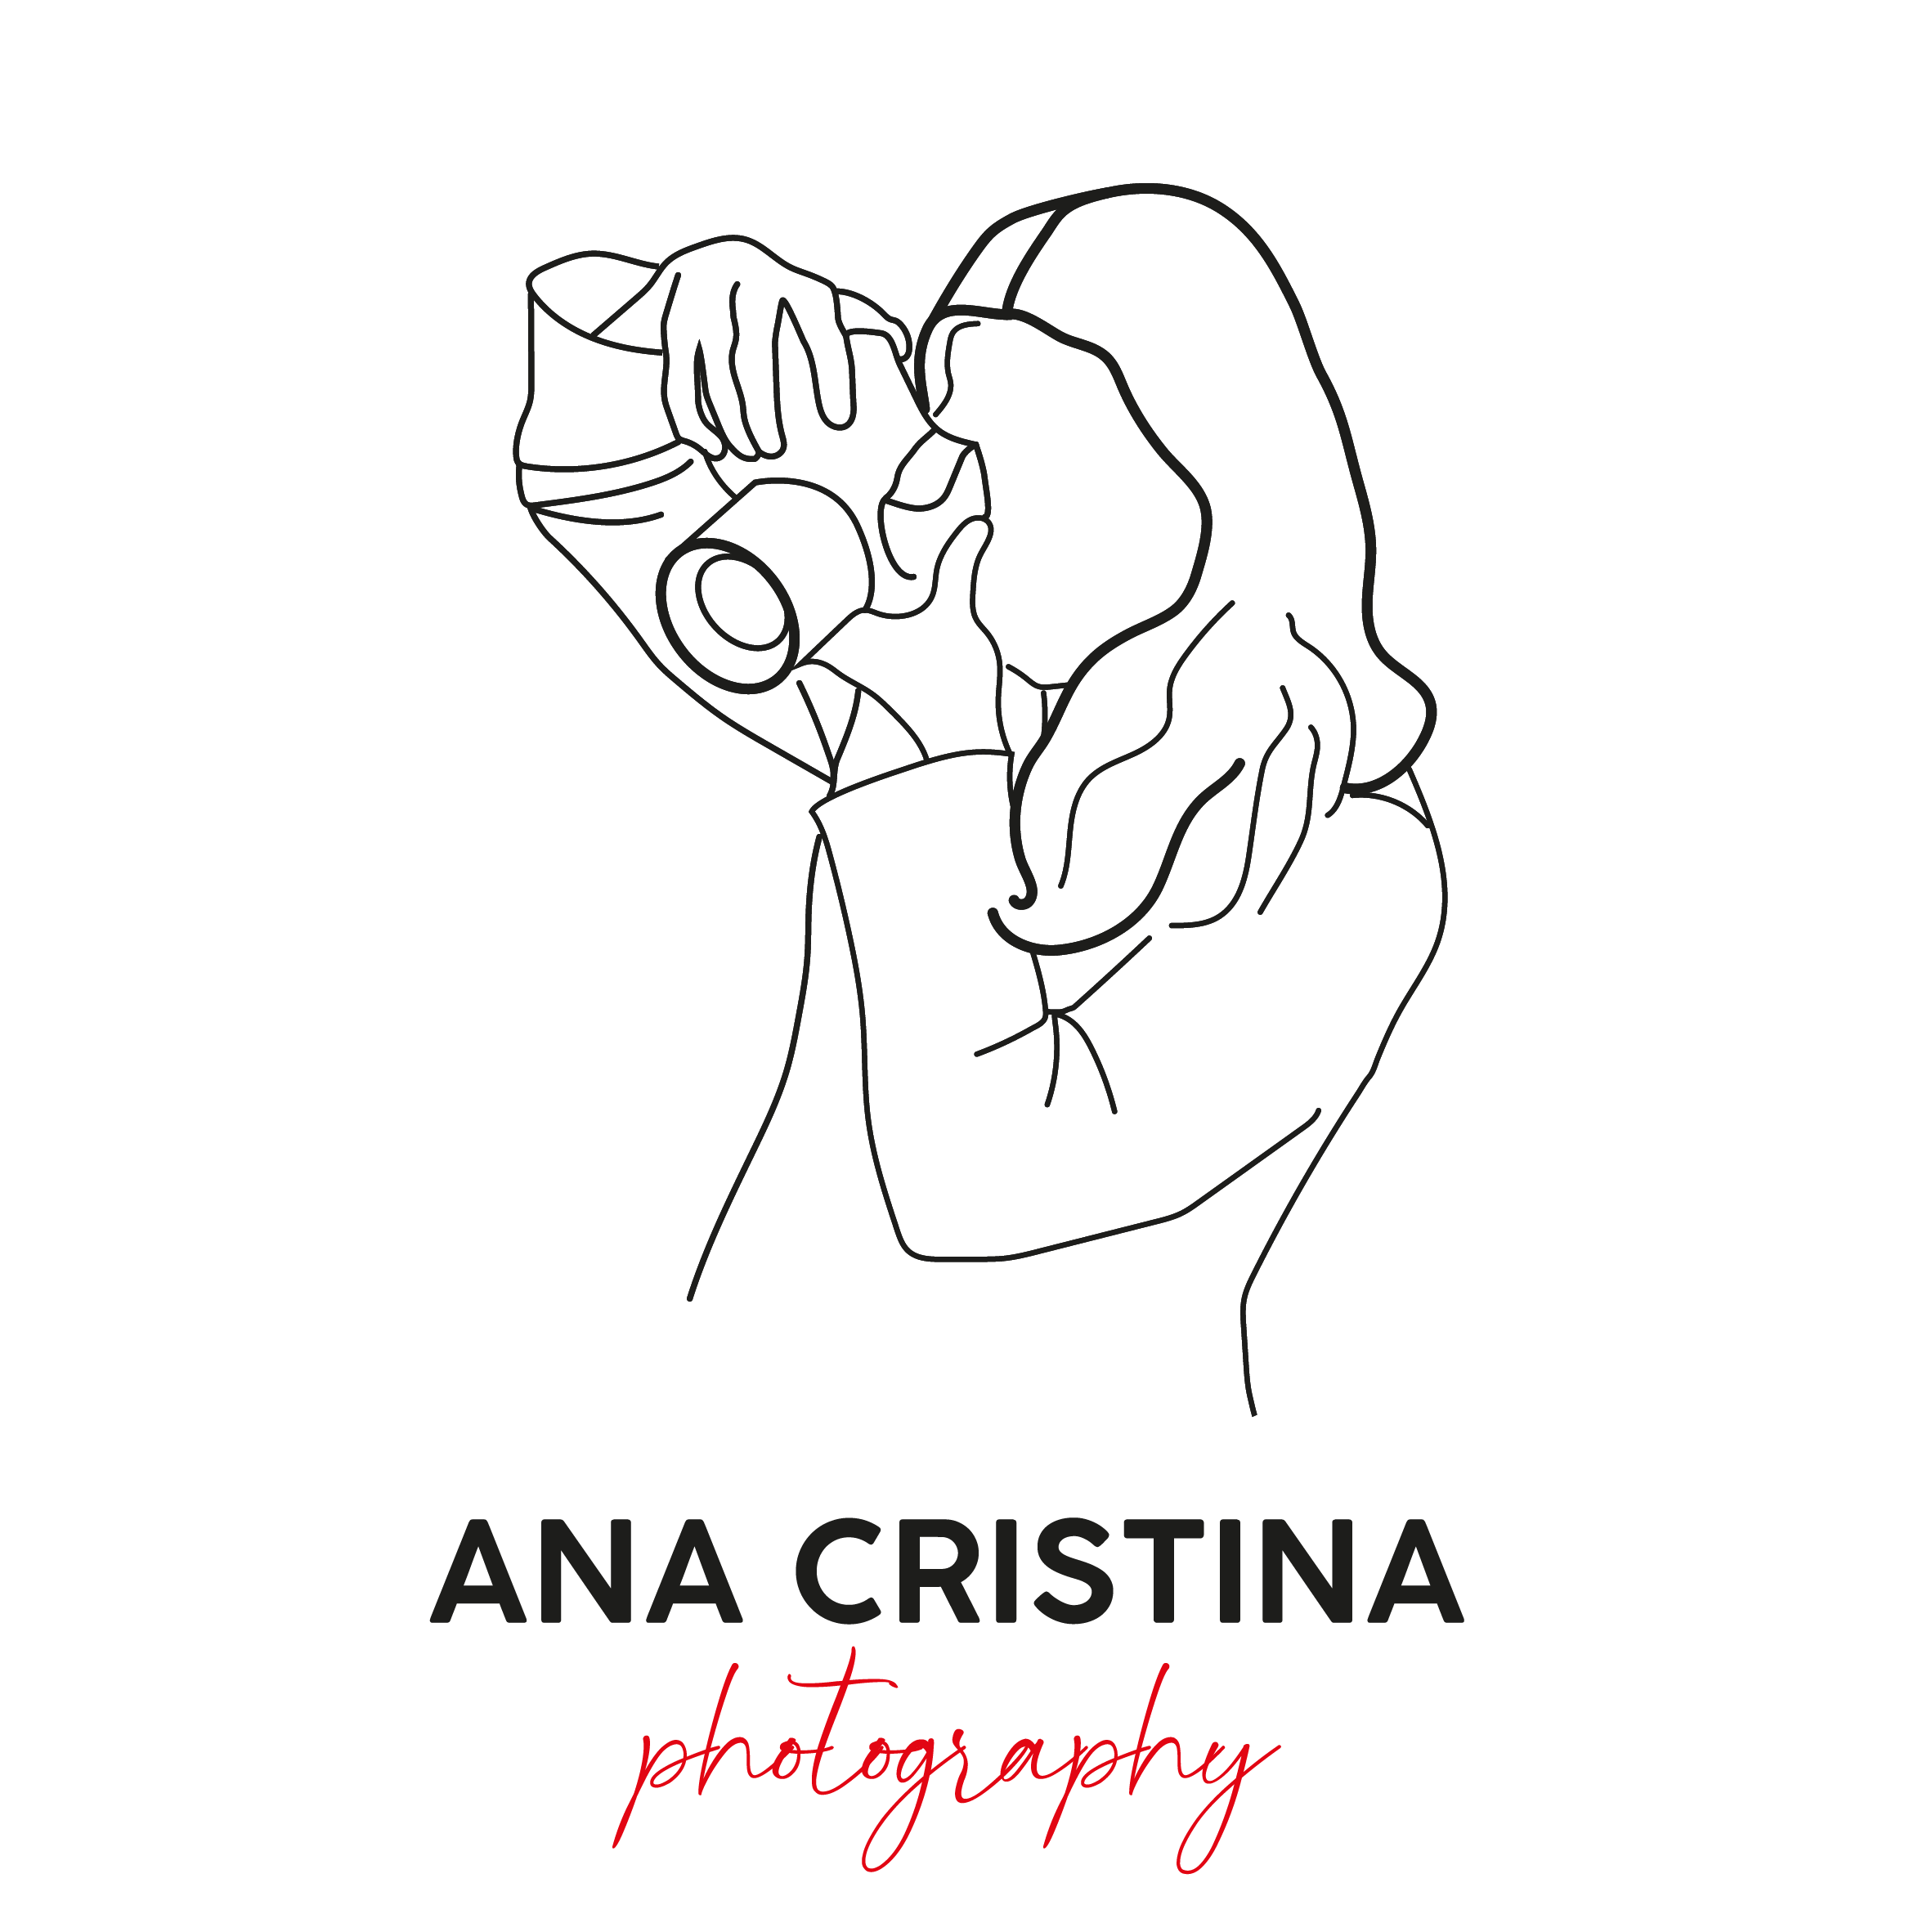 Ana Cristina Photography | Servicios de fotografía en Ibiza | Ibiza Wedding  Photographer - Fotografía en Ibiza y cursos para fotógrafos